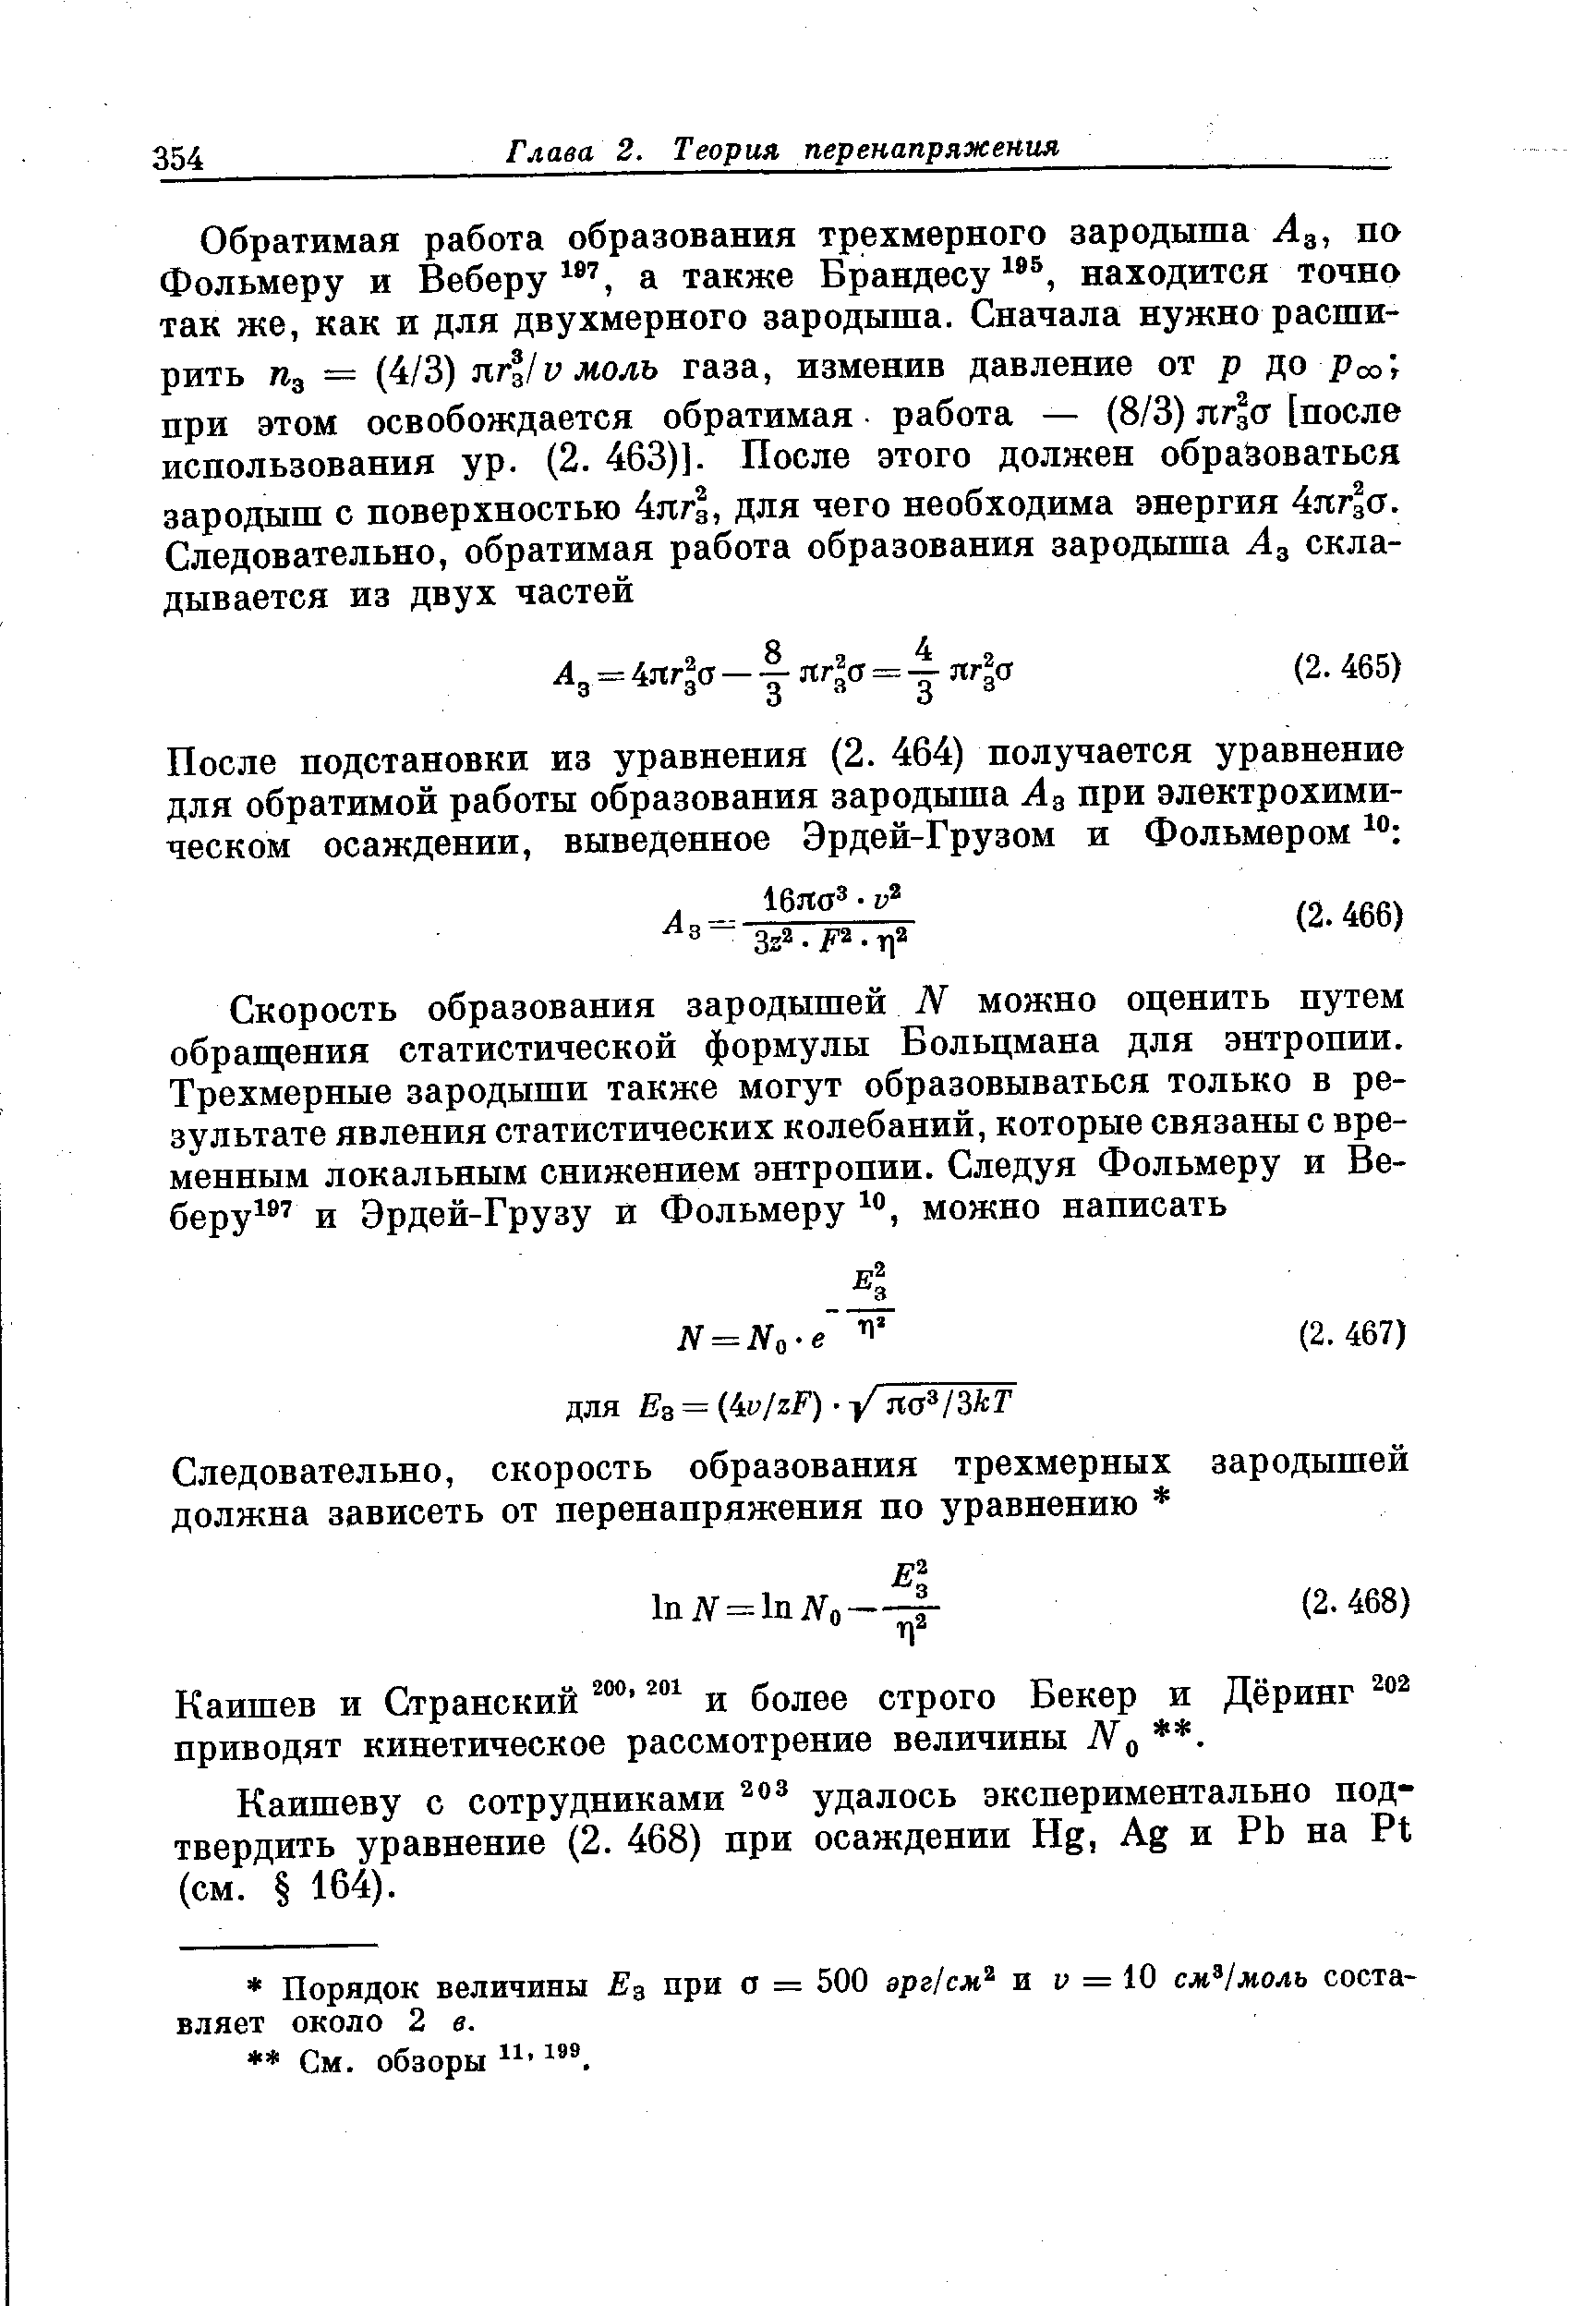 Каишеву с сотрудниками удалось экспериментально подтвердить уравнение (2. 468) при осаждении Нд, Ад и РЬ на Р1 (см. 164).